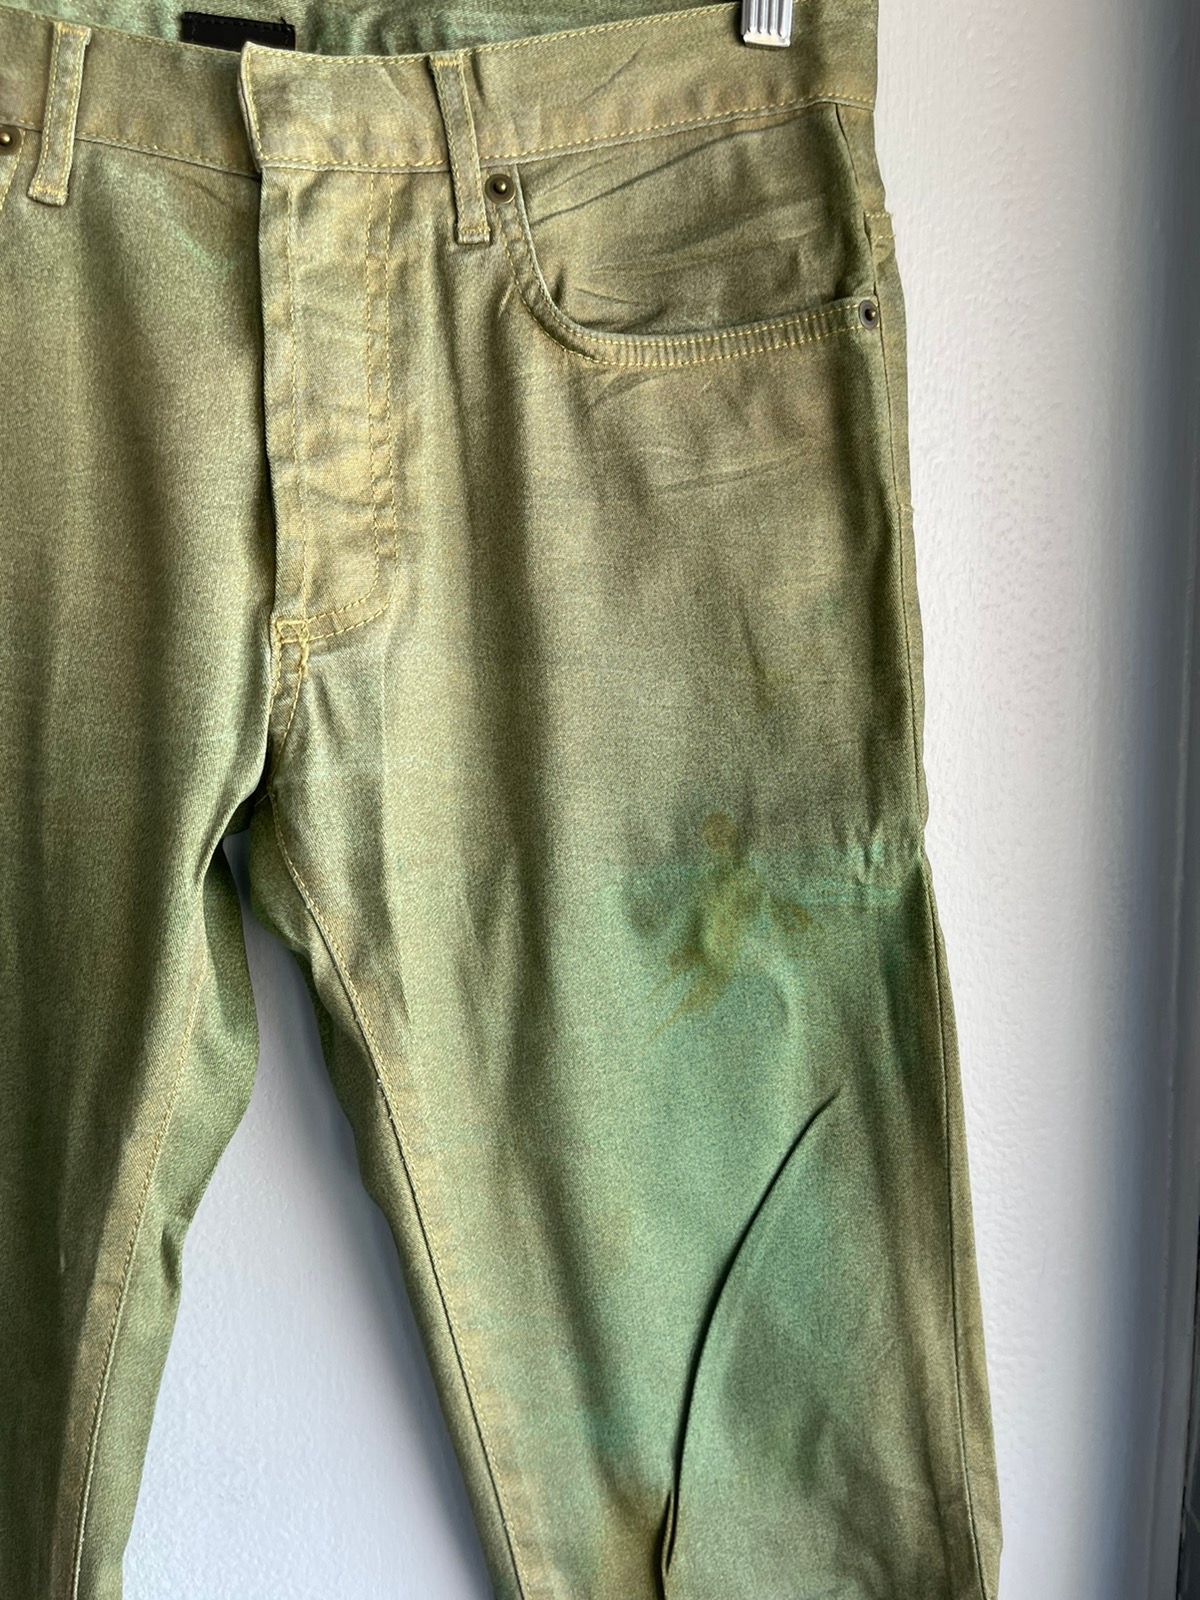 Dior Homme 06 1/1 Sample Green Denim Baked Jeans 28 29 30